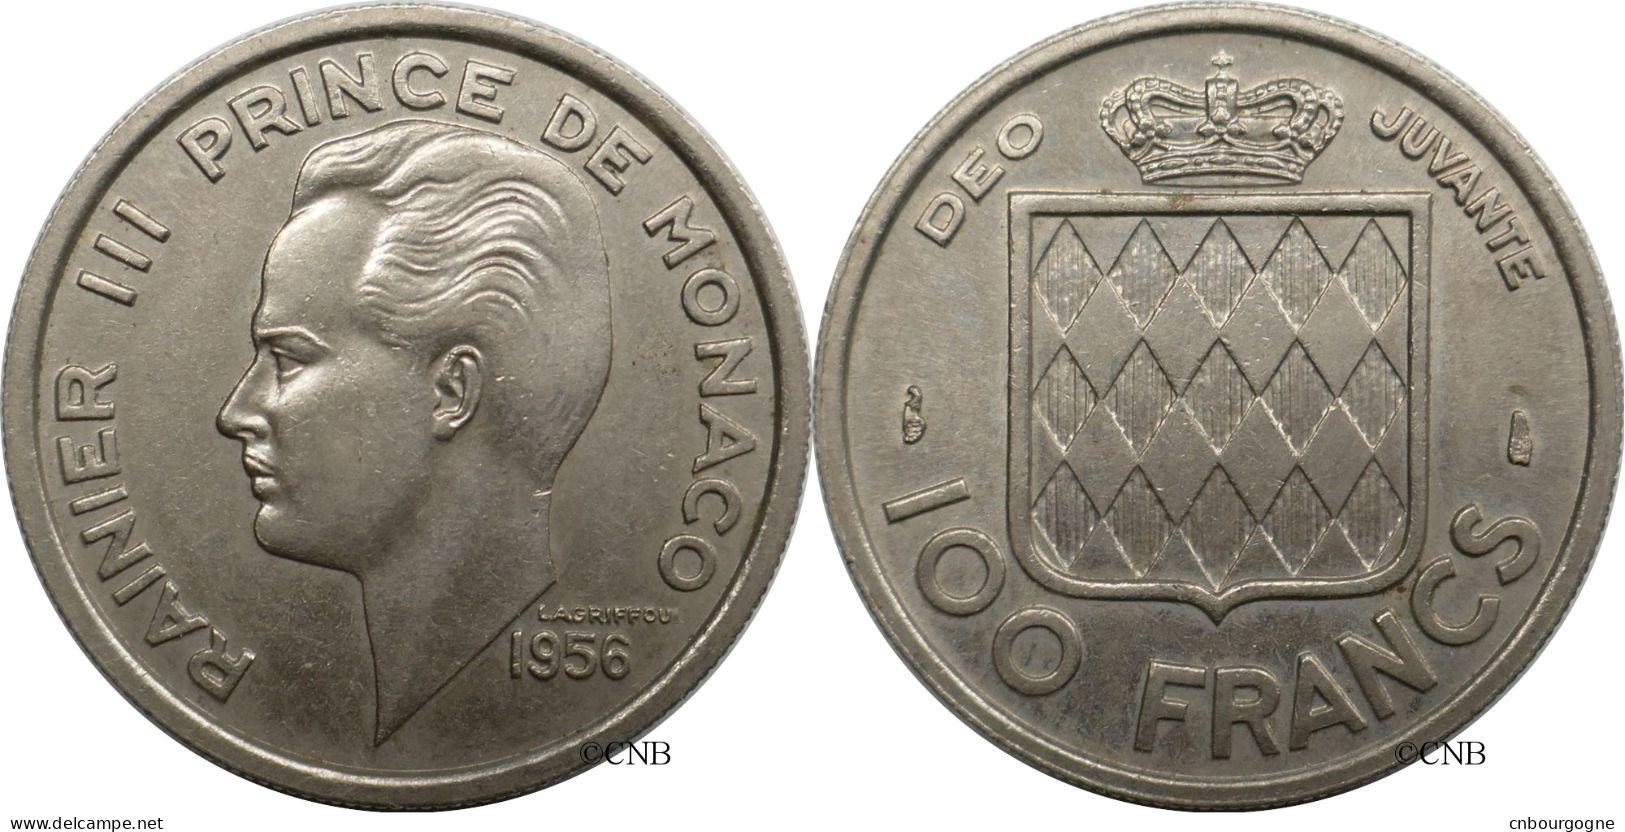 Monaco - Principauté - Rainier III - 100 Francs 1956 - SUP/AU58 - Mon6589 - 1949-1956 Anciens Francs